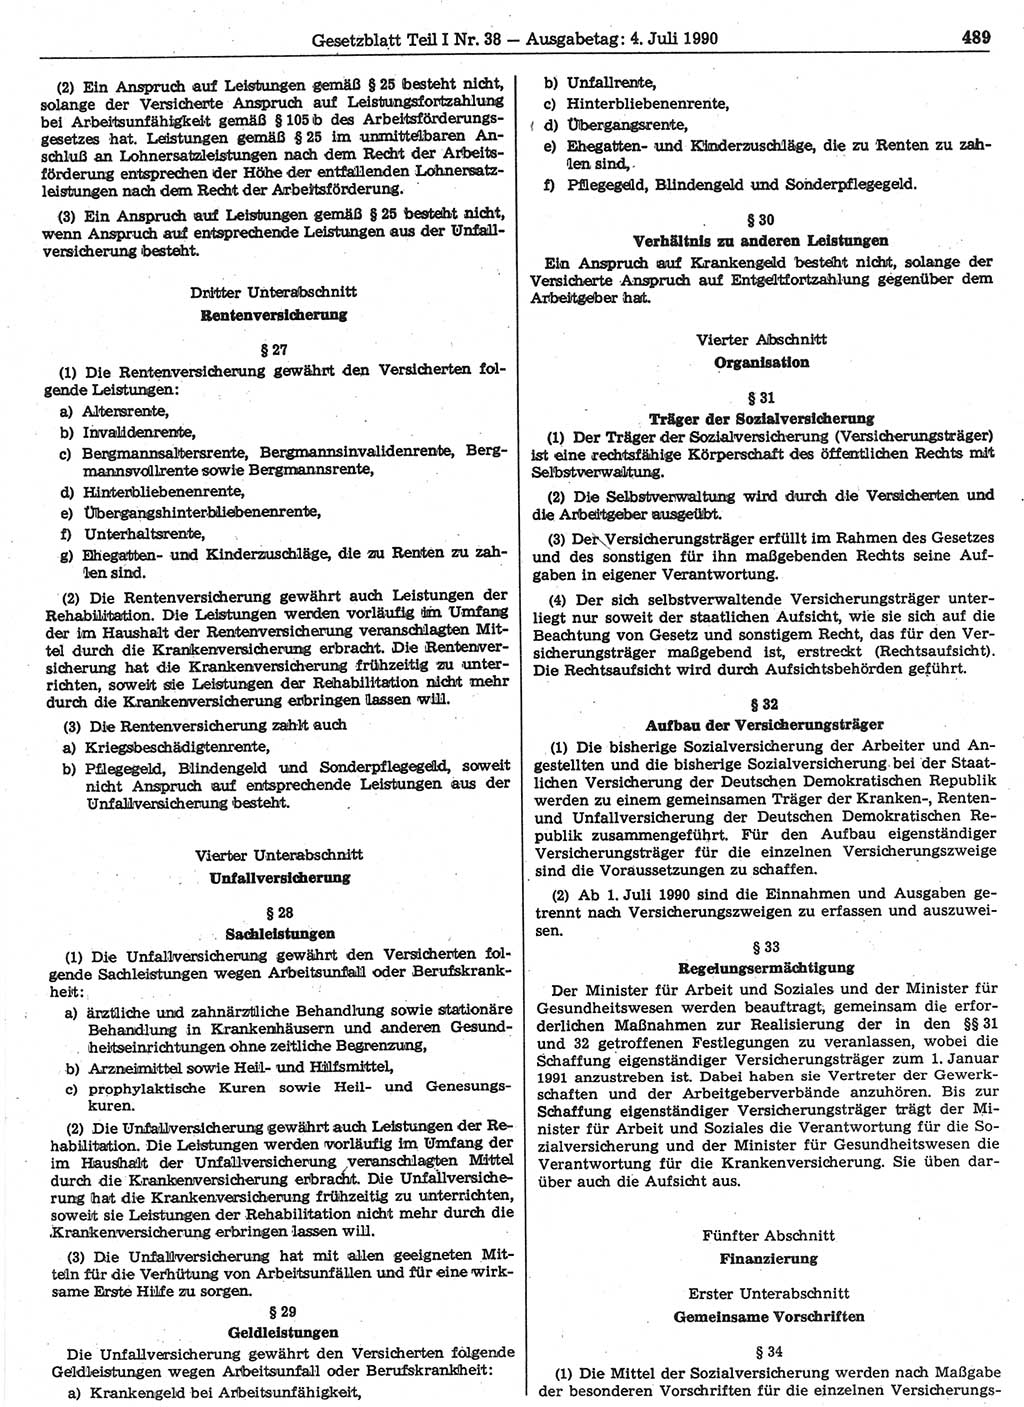 Gesetzblatt (GBl.) der Deutschen Demokratischen Republik (DDR) Teil Ⅰ 1990, Seite 489 (GBl. DDR Ⅰ 1990, S. 489)